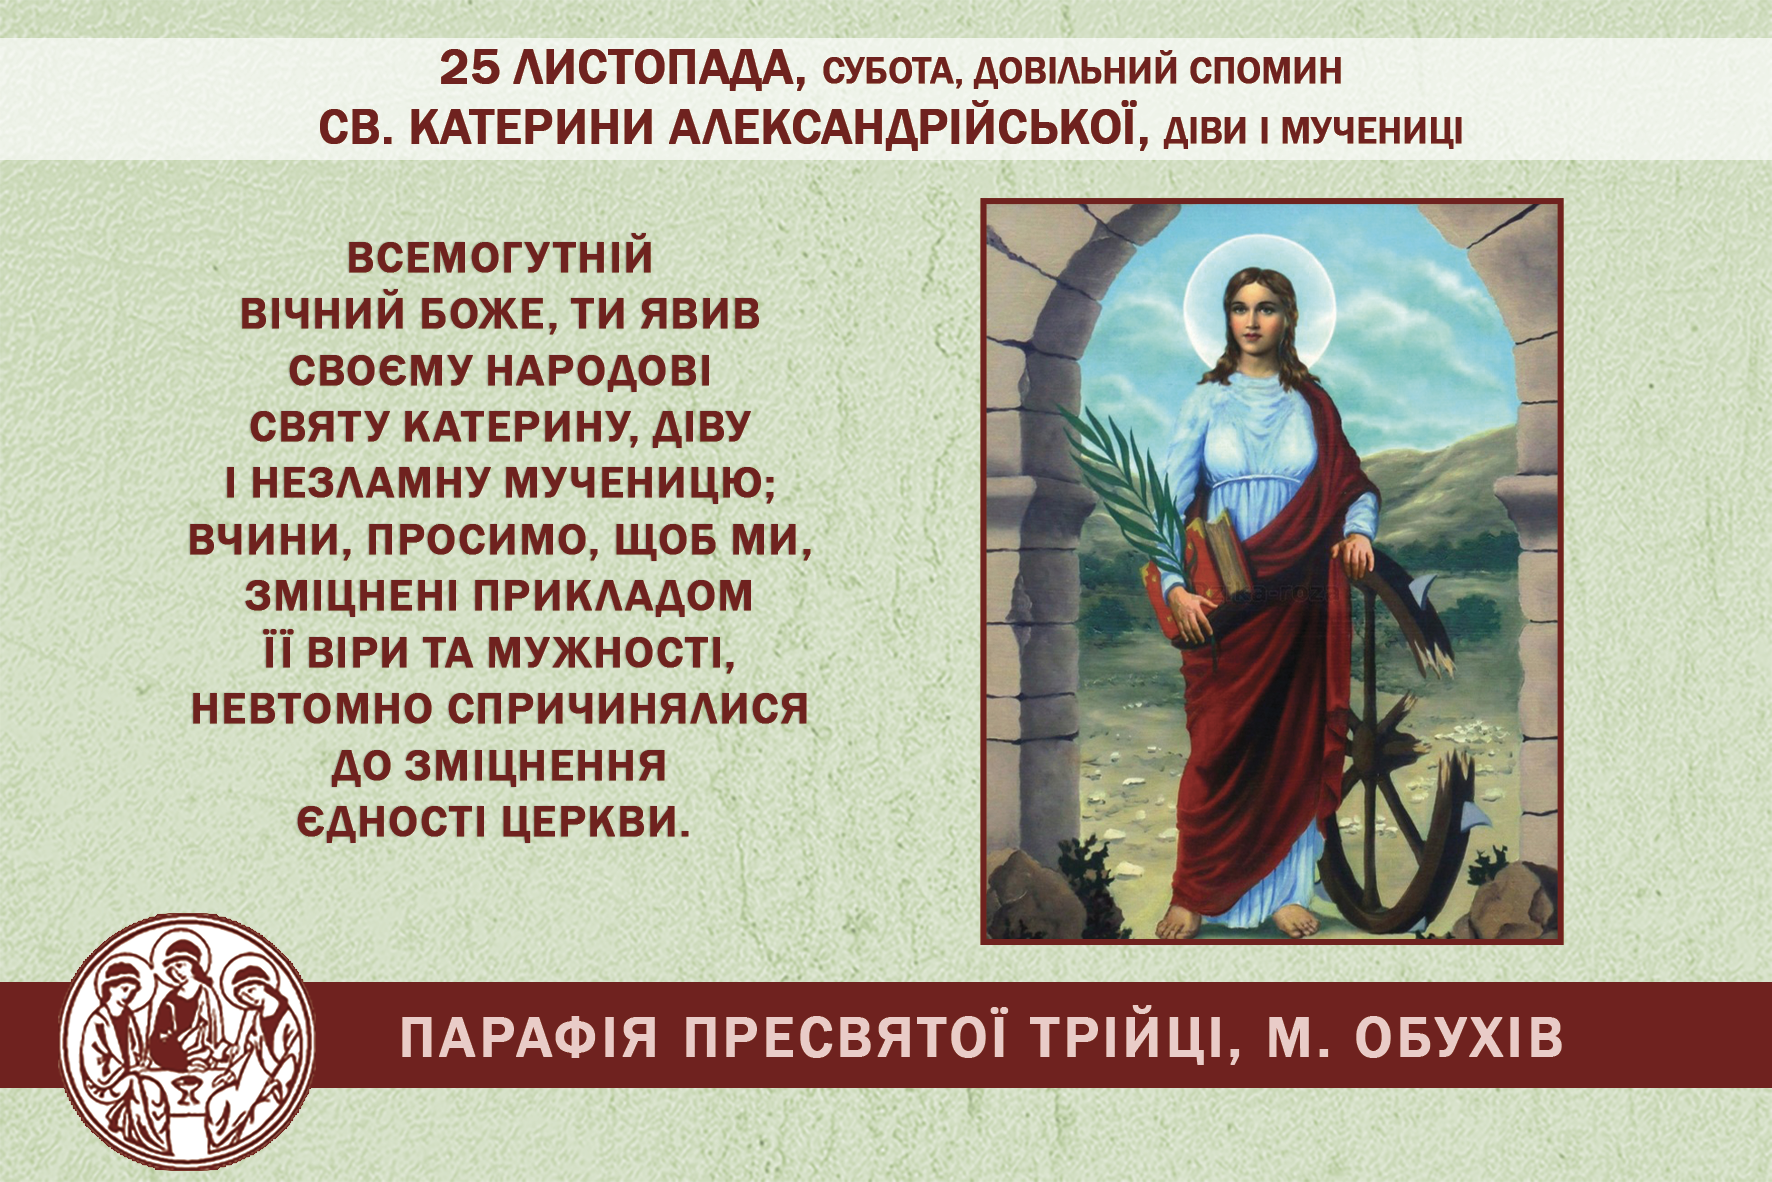 25 листопада, субота, довільний спомин св. Катерини Александрійської, діви і мучениці.